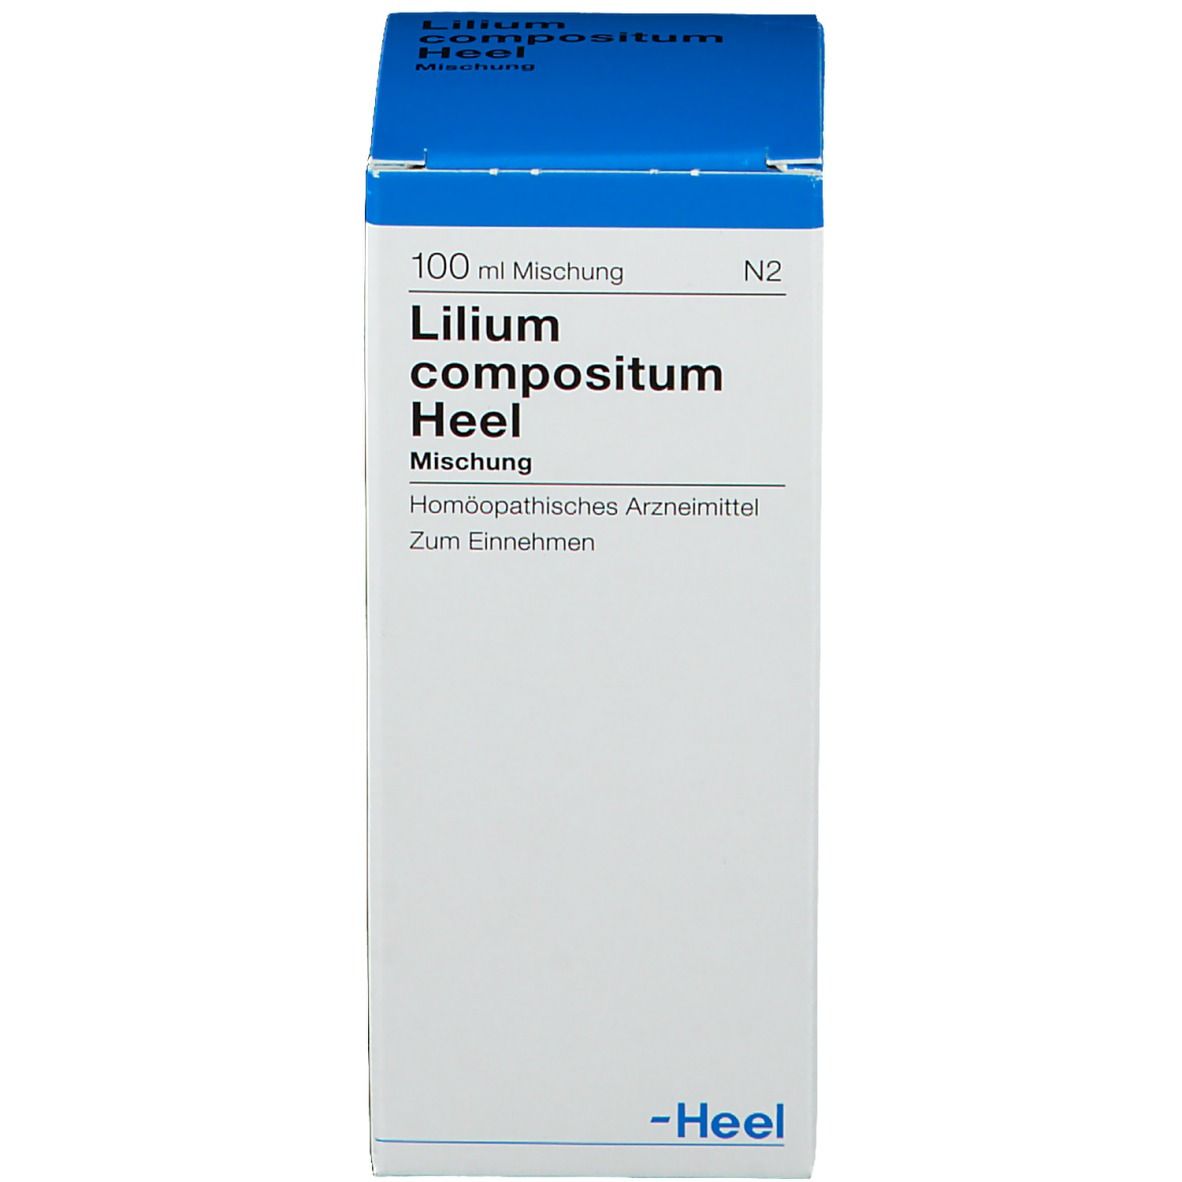 Lilium compositum Heel® Mischung